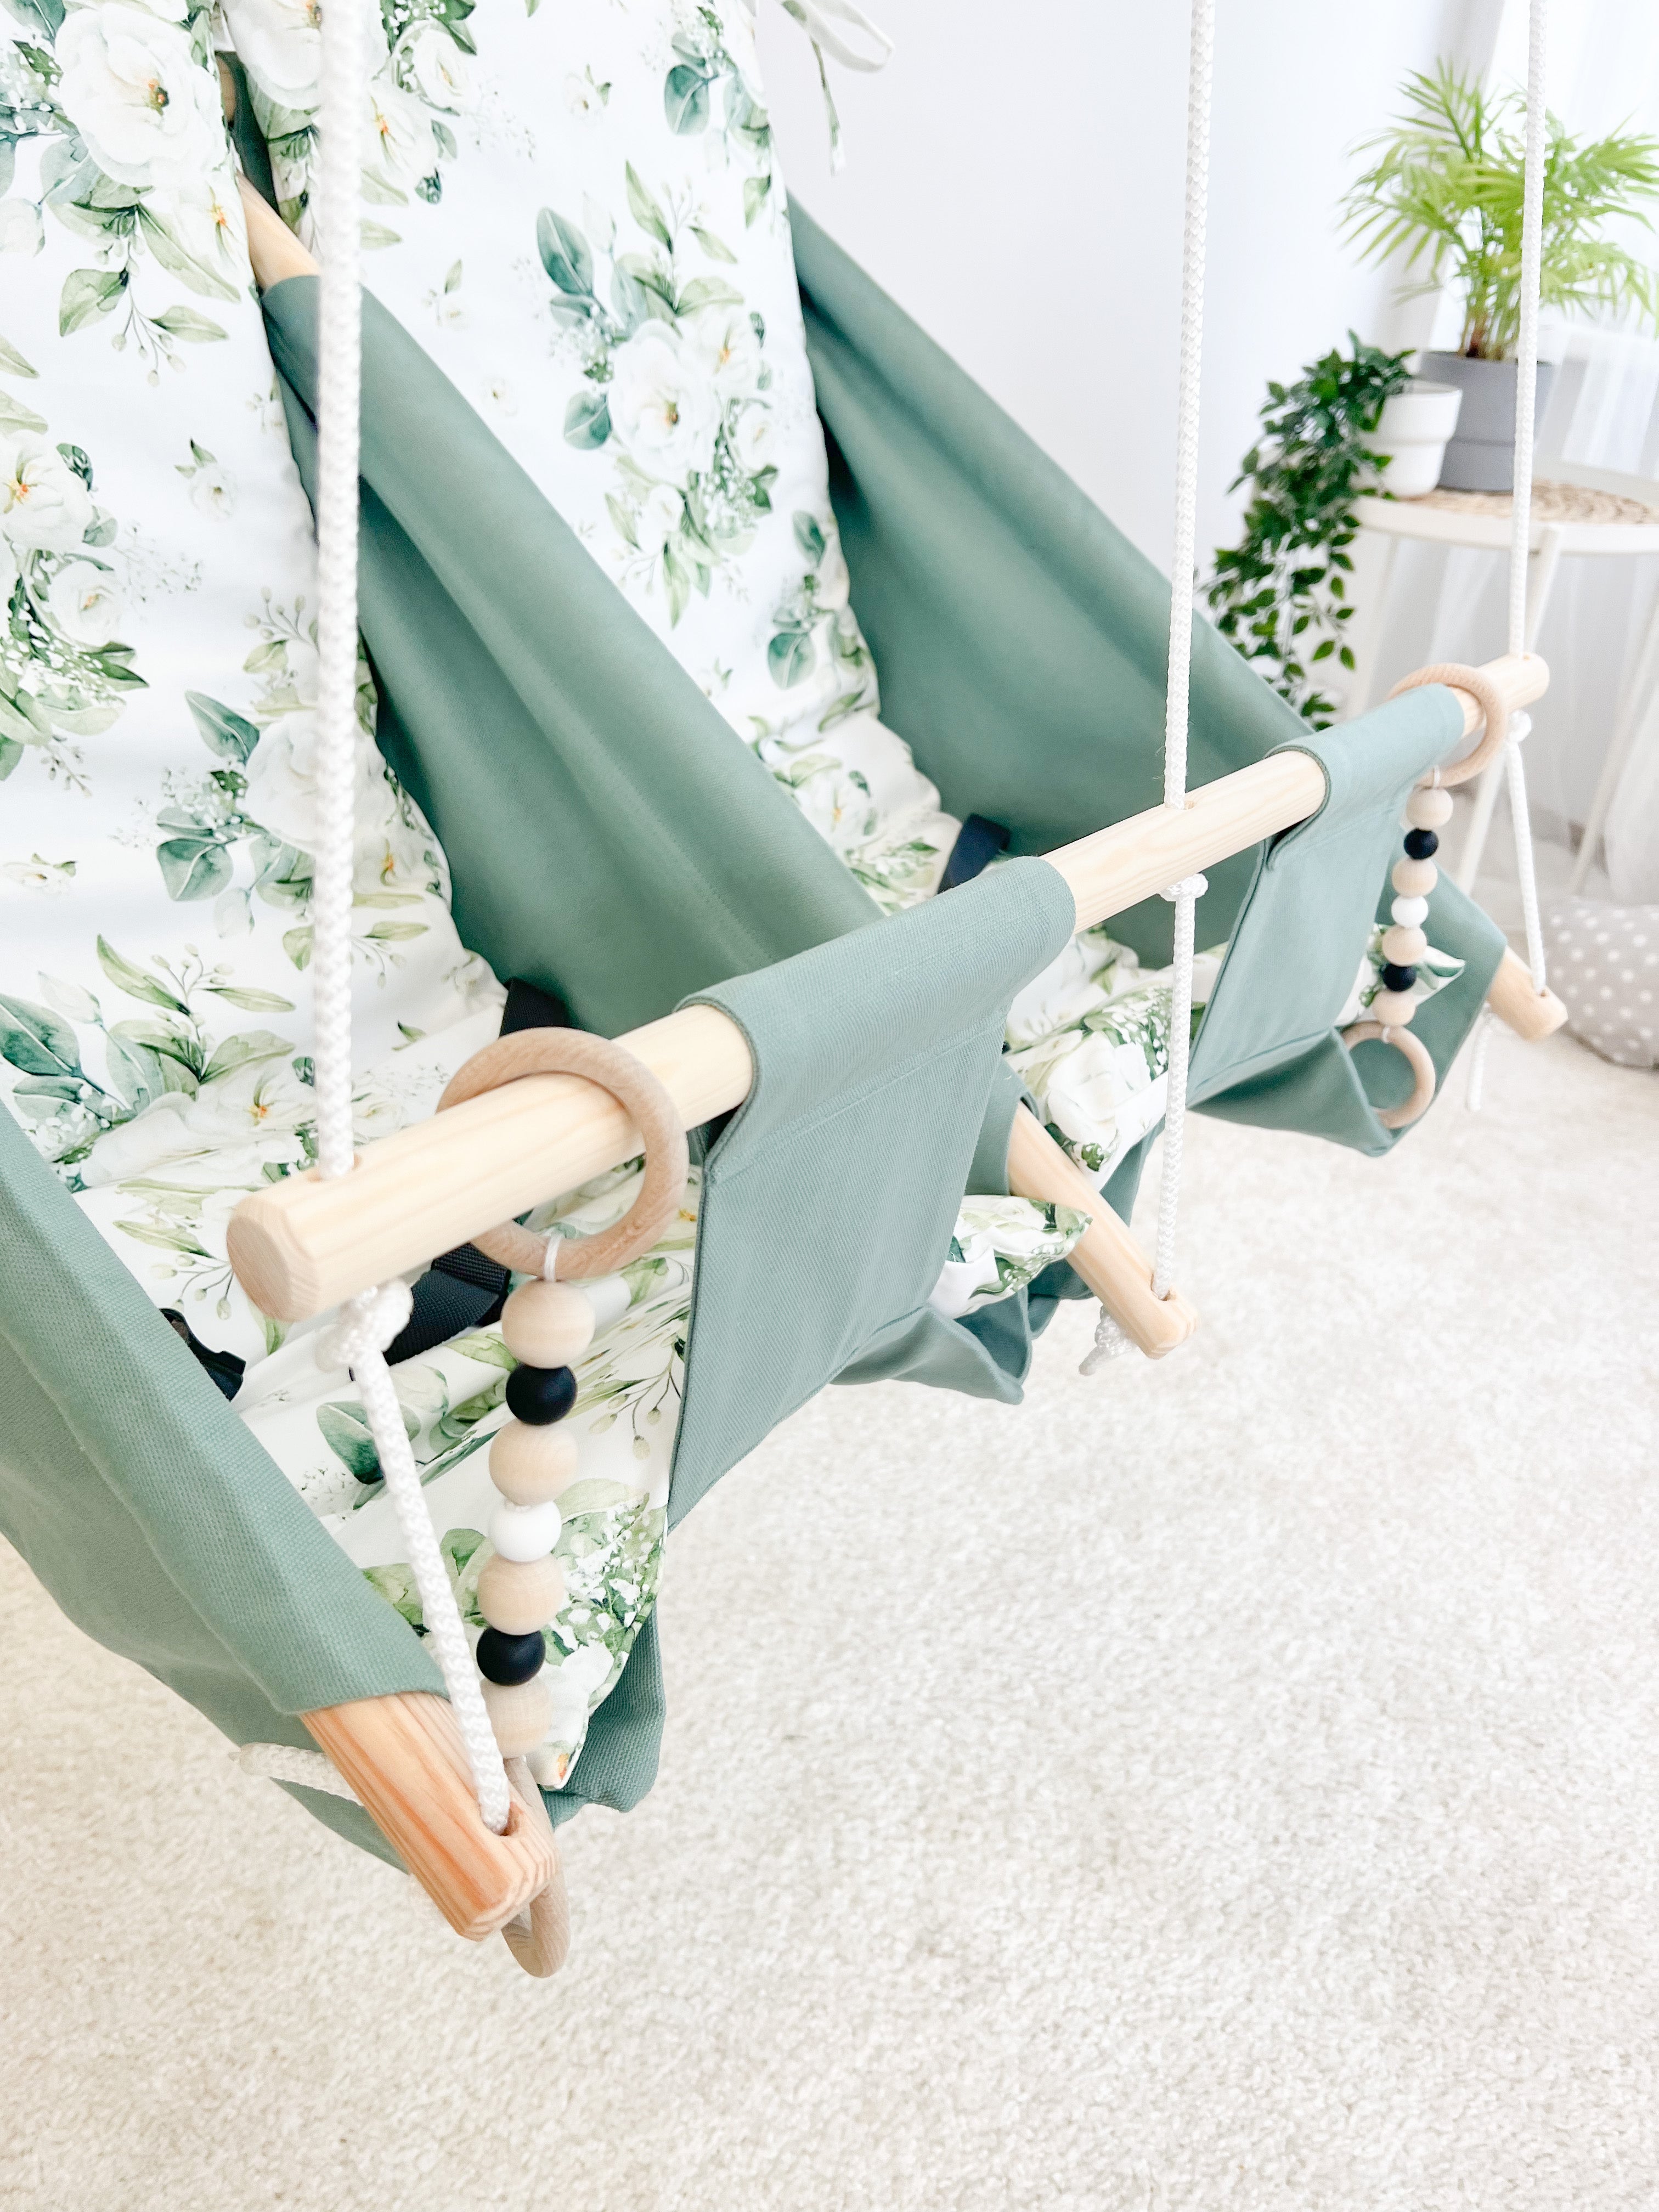 Twin hammock swing "White Flowers"